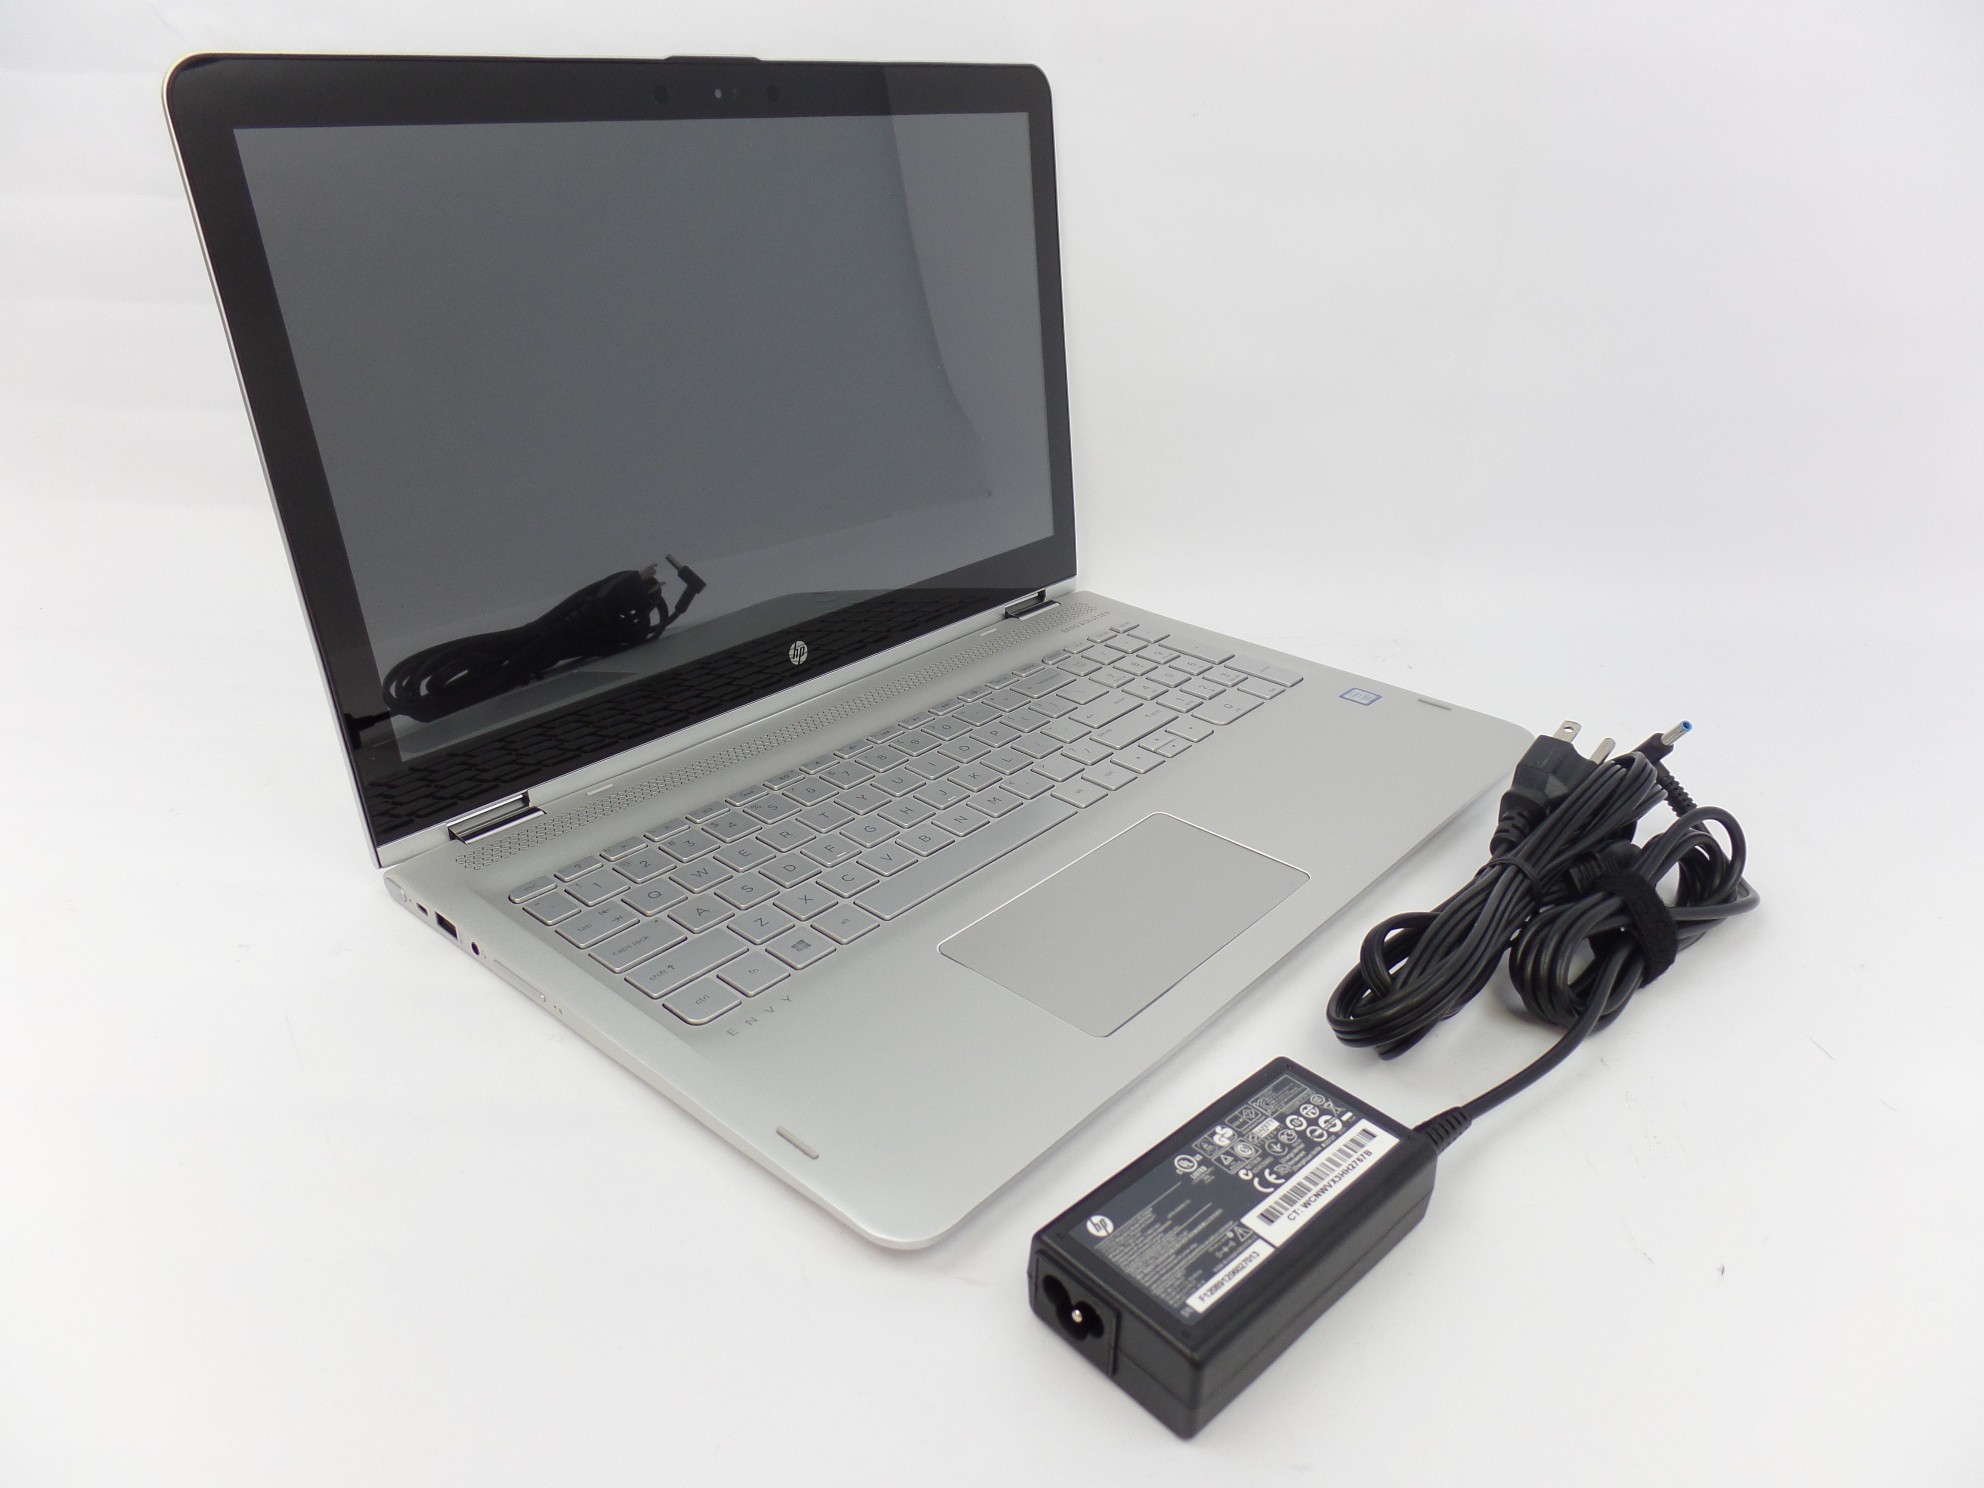 HP ENVY x360 m6-aq105dx 15.6" FHD Touch i7-7500U 16GB 1TB W10H Laptop W2K44UA U